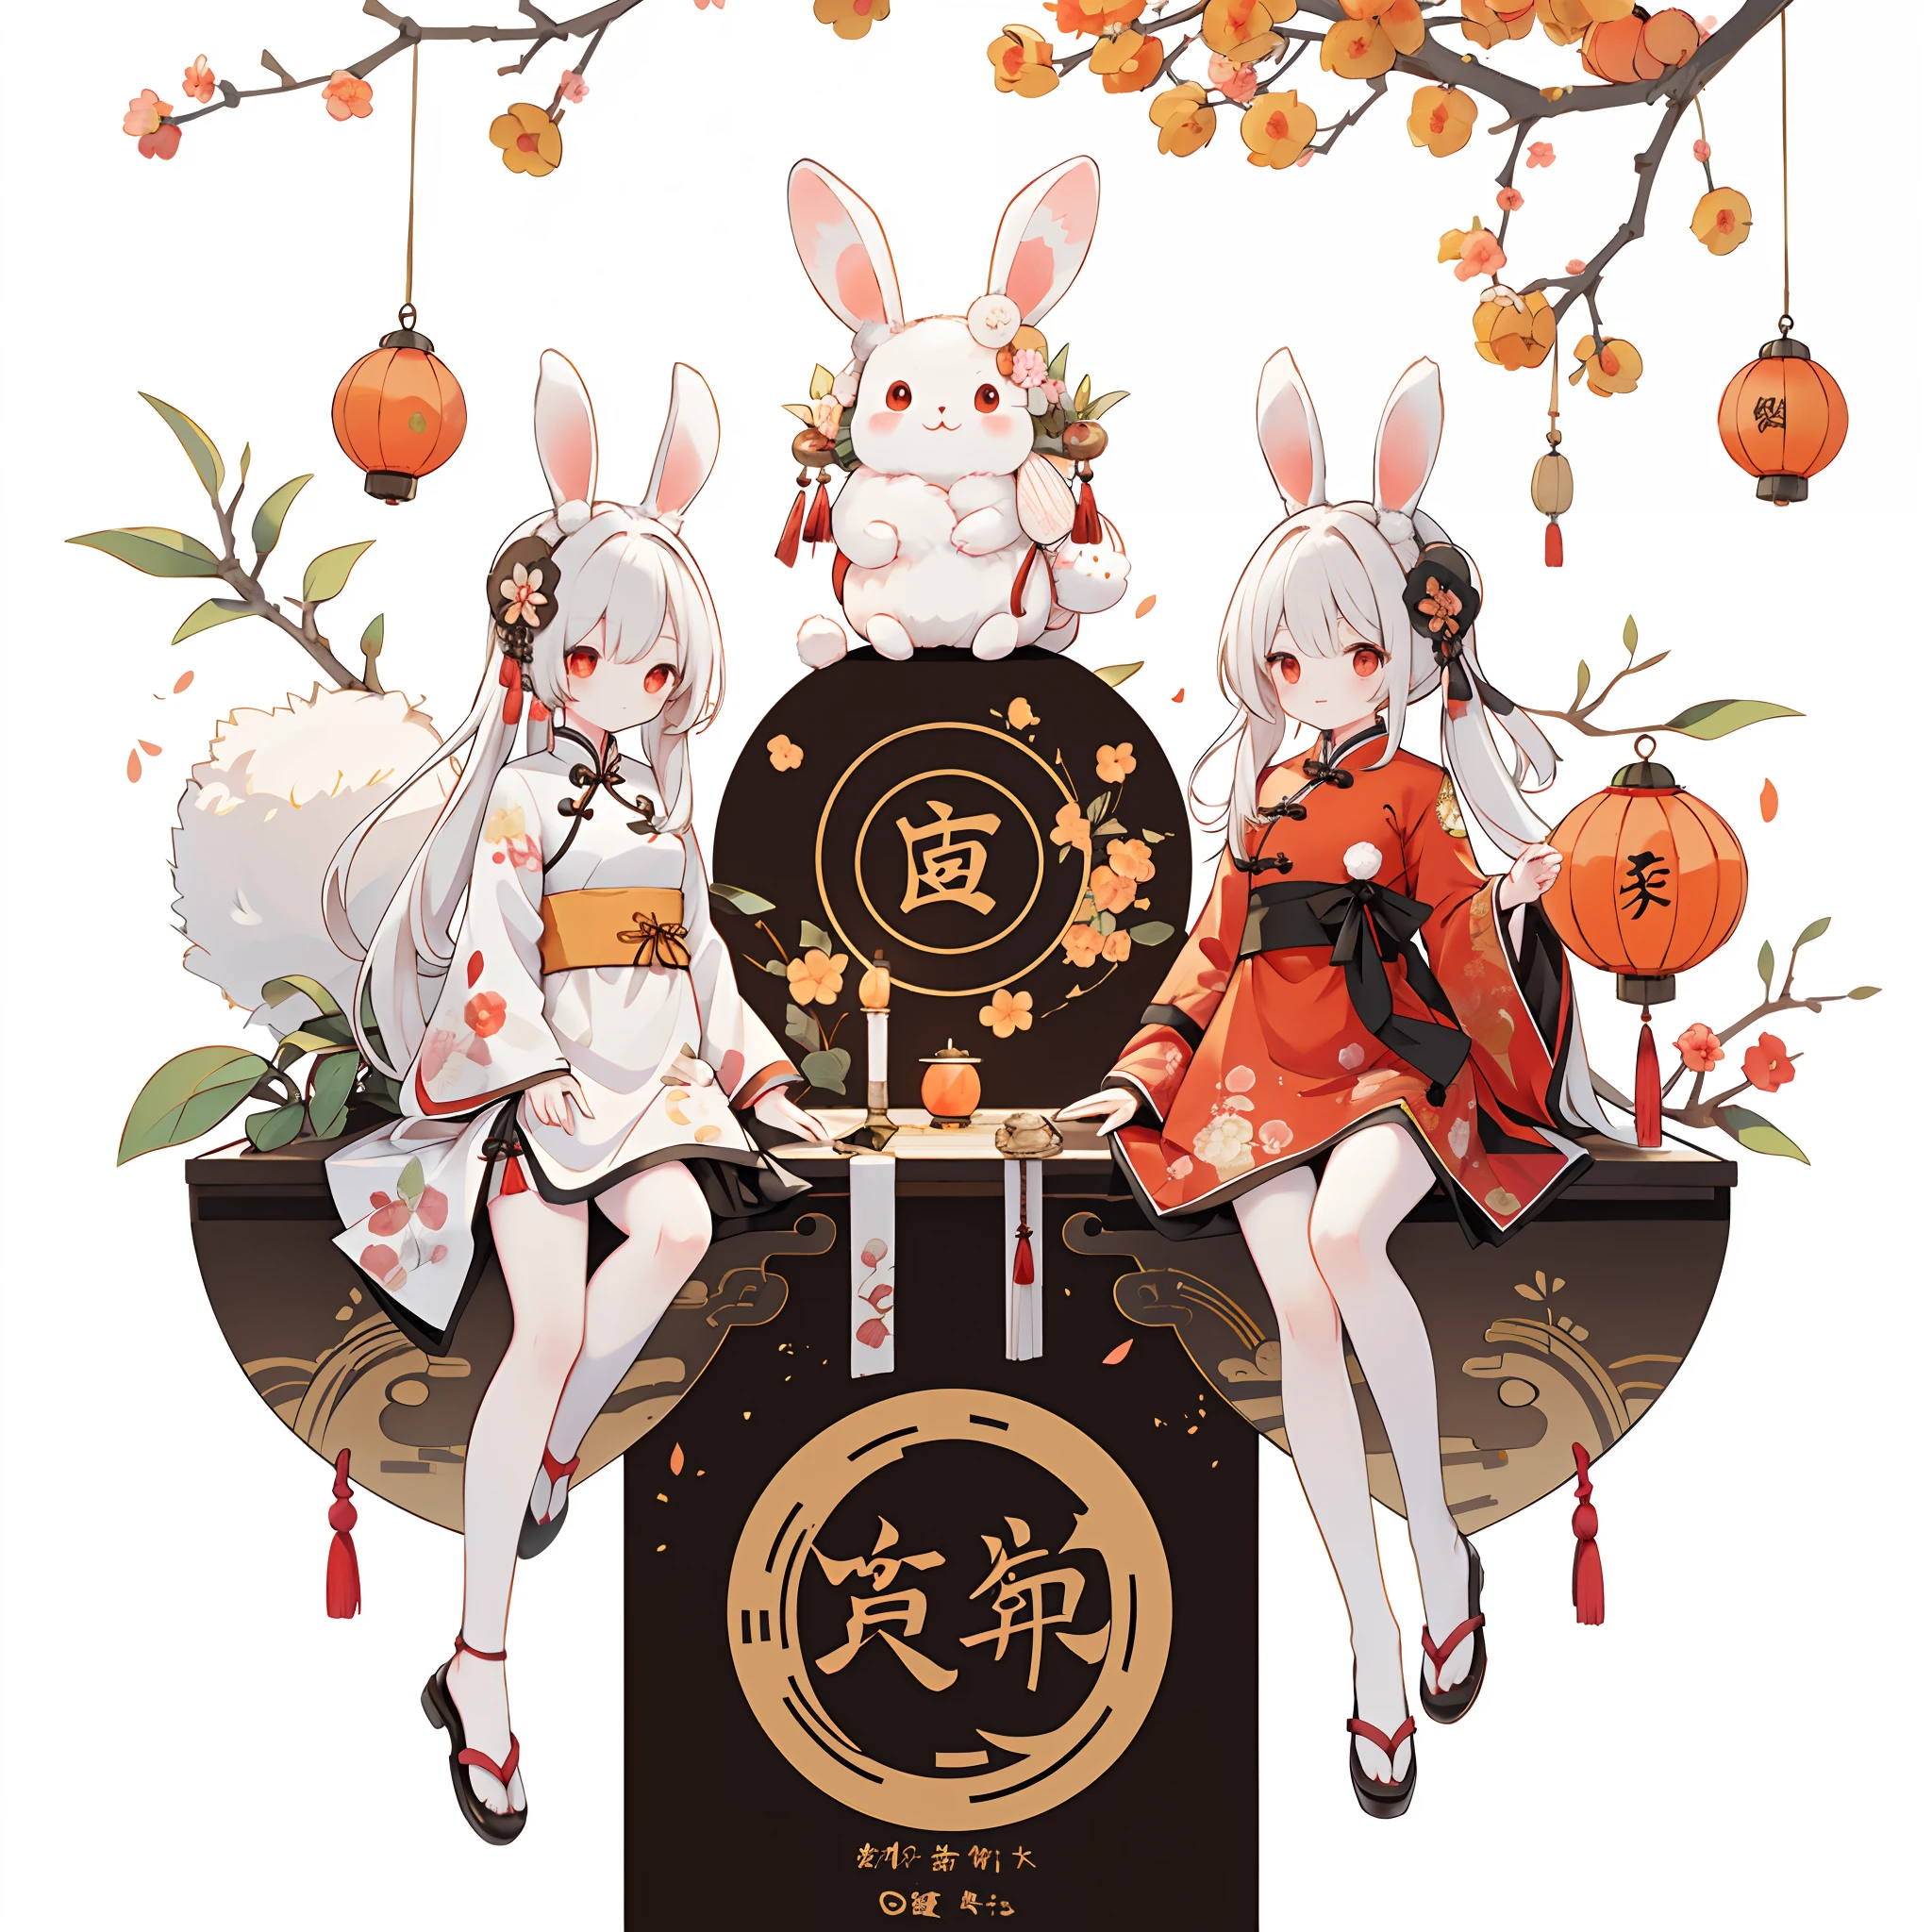 （一隻兔子：1.4）, 坐在地上, 抬頭看, 中秋節氣氛, 桂花，孔明燈，（漢字：1.3），中國傳統插畫風格, 數位藝術, 簡單的背景, 白色背景上的傑作, 最好的品質, 超詳細, 高品質, 4k